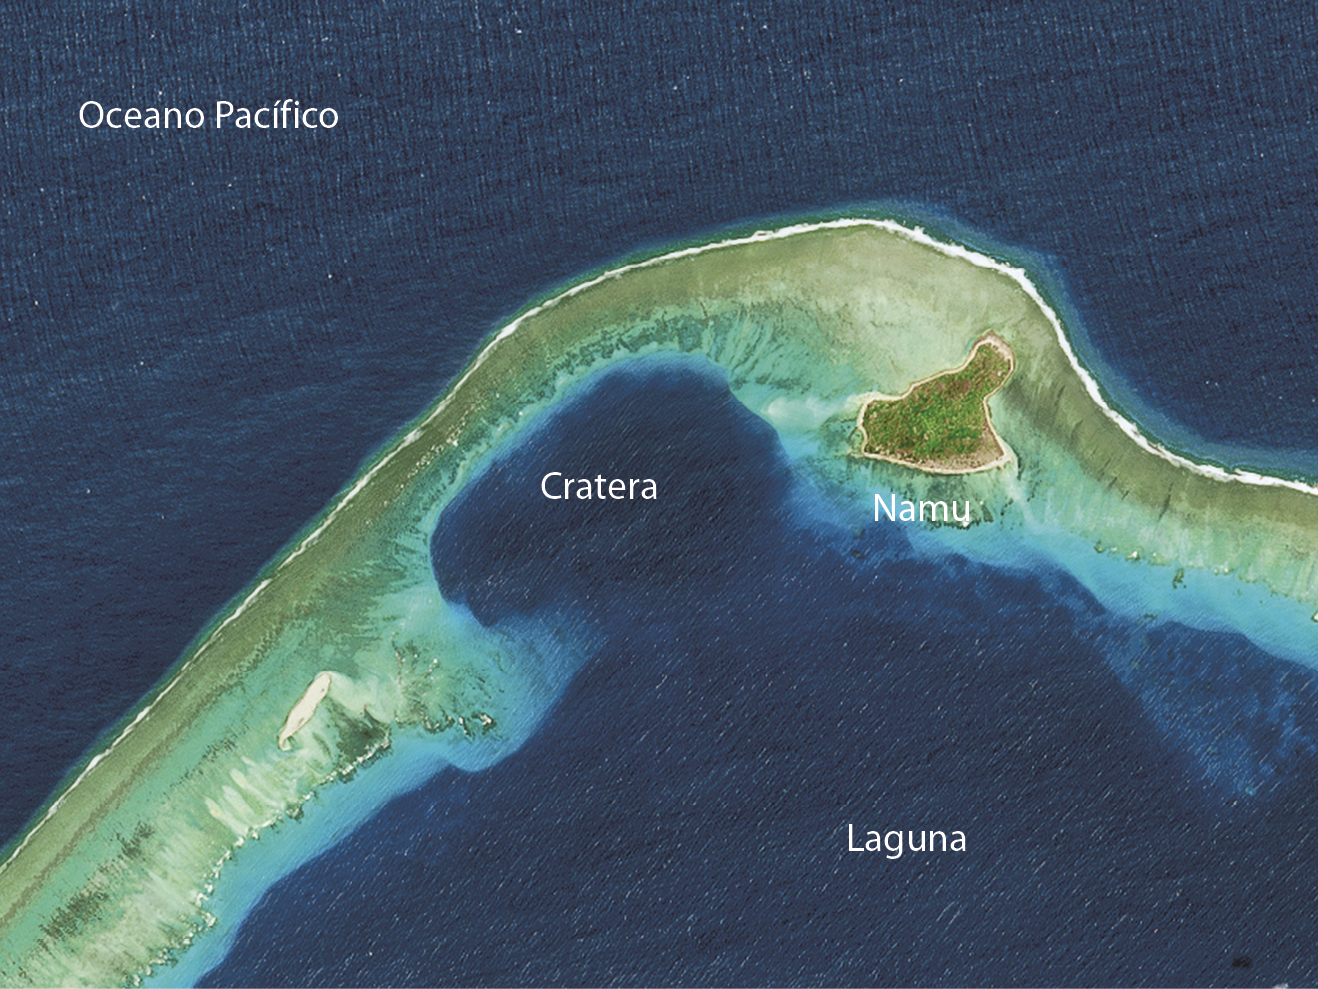 Imagem de satélite. Vista aérea para um recife de coral alongado, no sentido sudoeste-leste, representando trecho do atol de Bikini. Na posição central do recife, há uma cratera coberta pela água do mar. À direita, uma pequena ilha coberta por vegetação densa, denominada de Namu. Ao Sul, porção de água do mar situada na parte interna do recife, denominada de Laguna. Ao norte, o mar azul escuro com a indicação Oceano Pacífico.